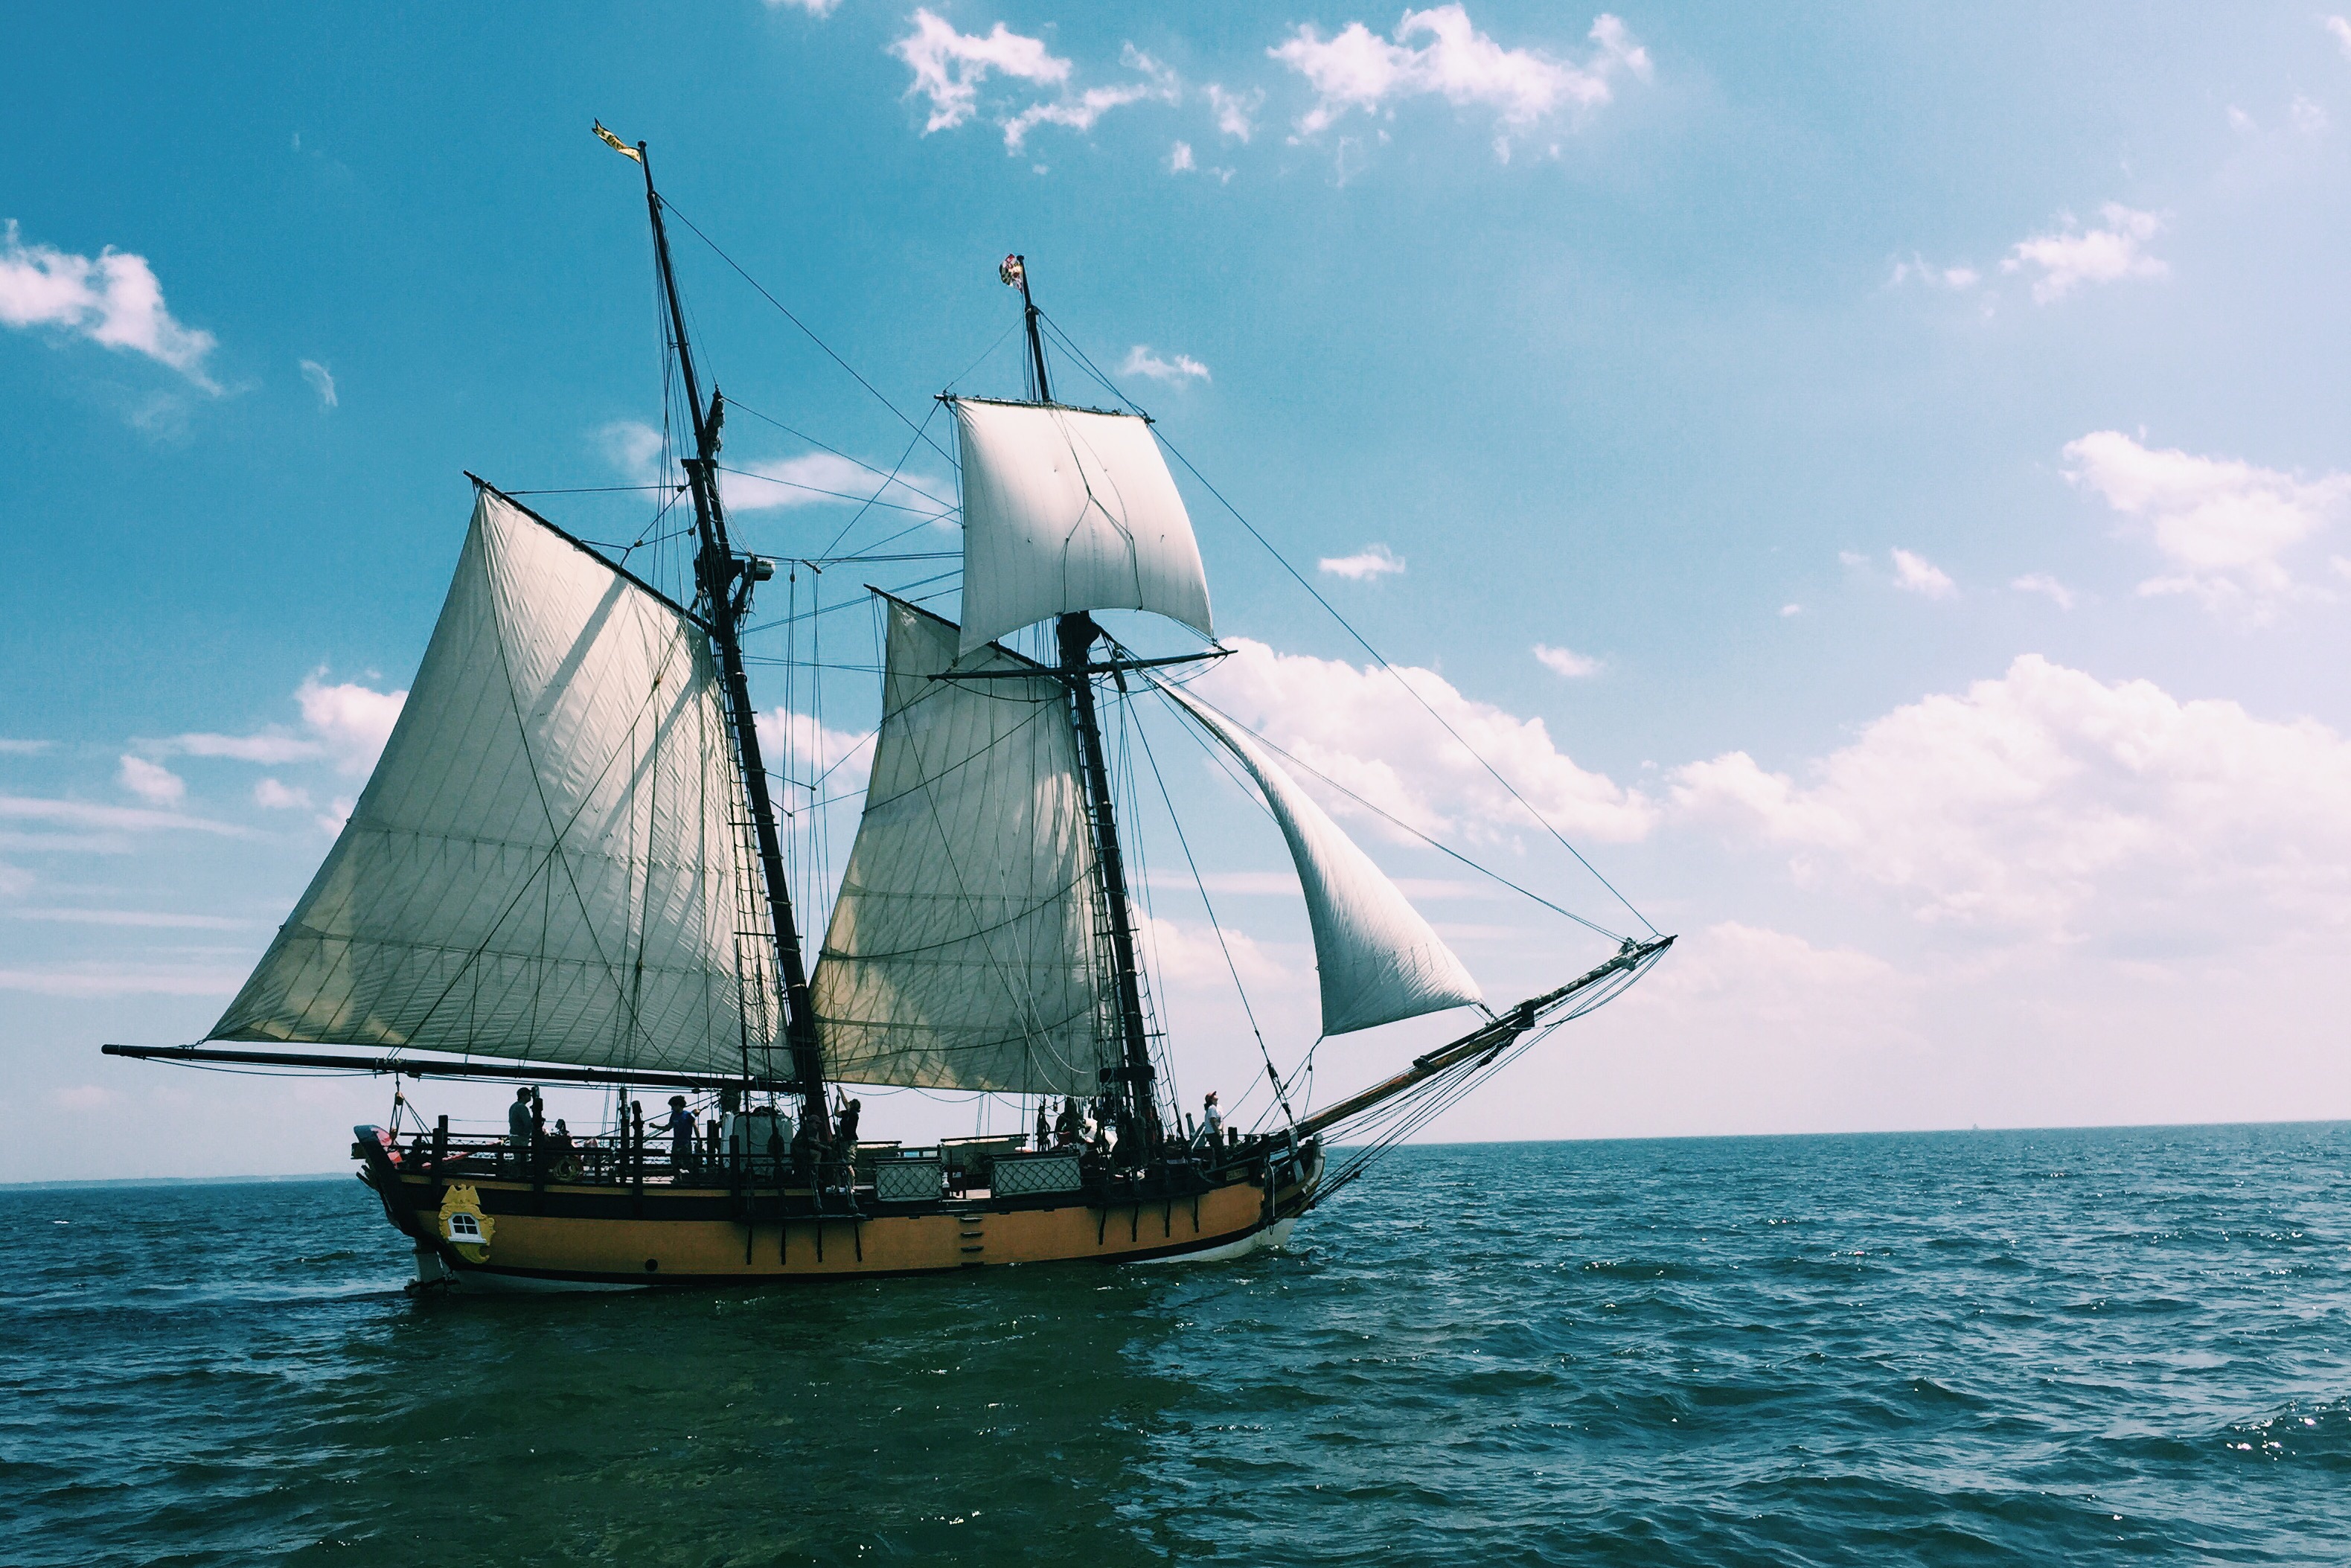 Sultana sailing ship